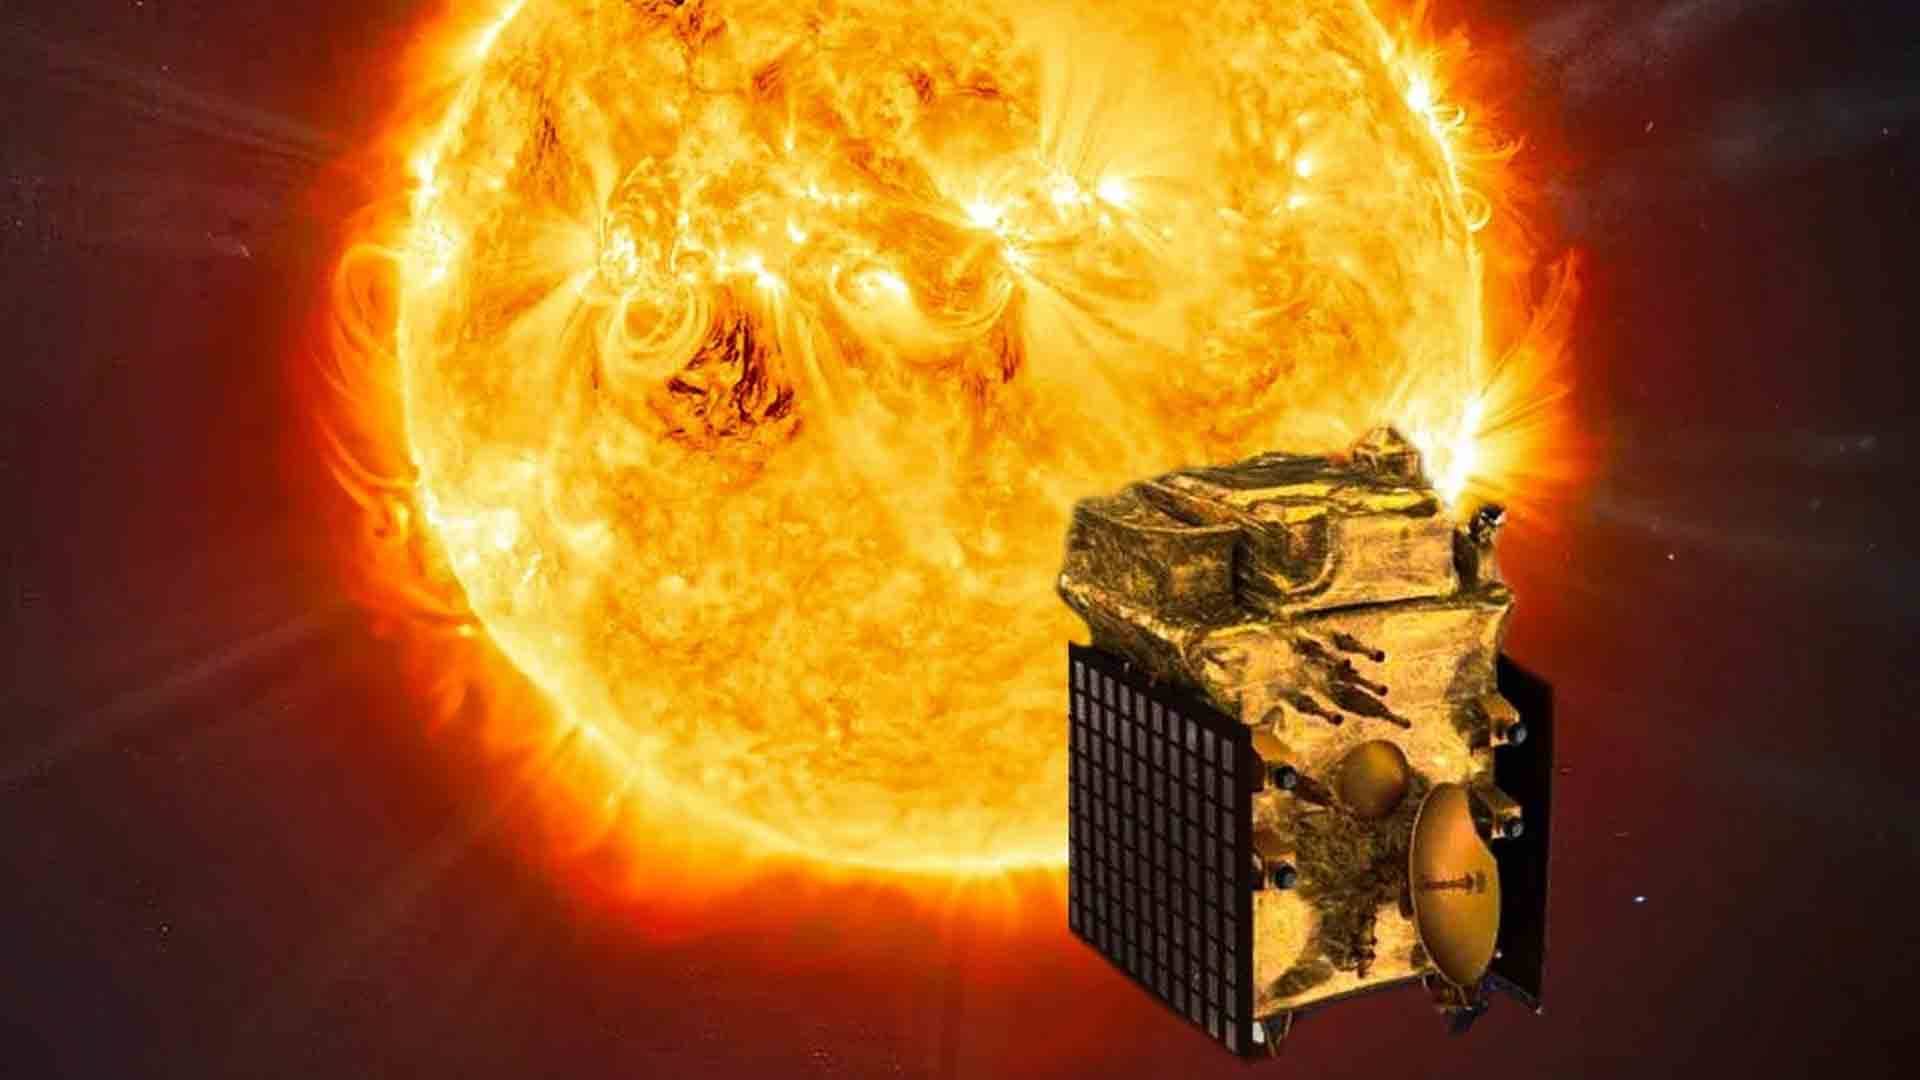 المسبار الهندي أديتيا إل-1 يصل إلى مدار الشمس